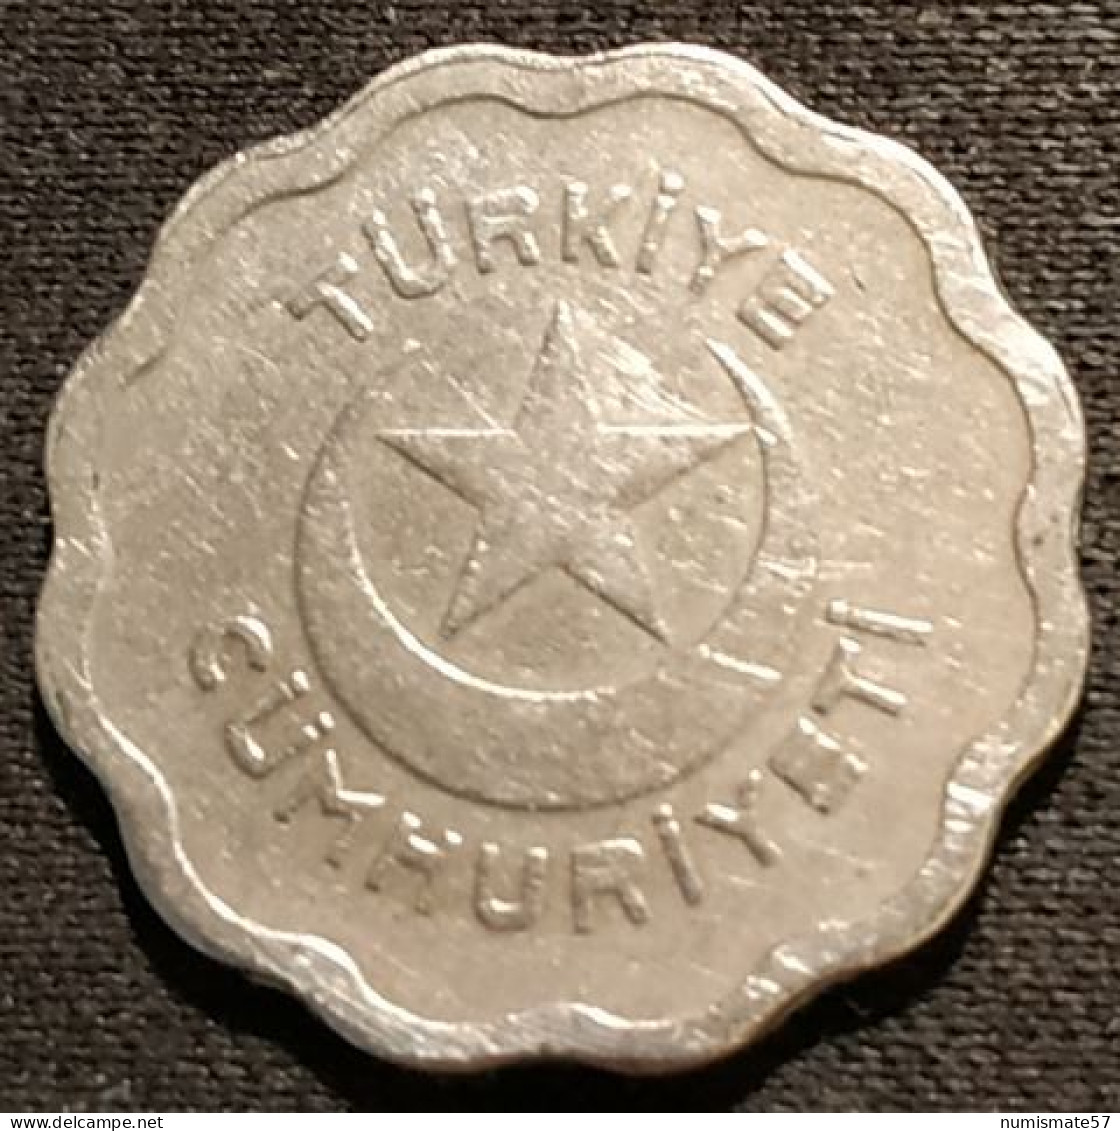 TURQUIE - TURKEY - 1 KURUS 1939 - KM 867 - Turquia